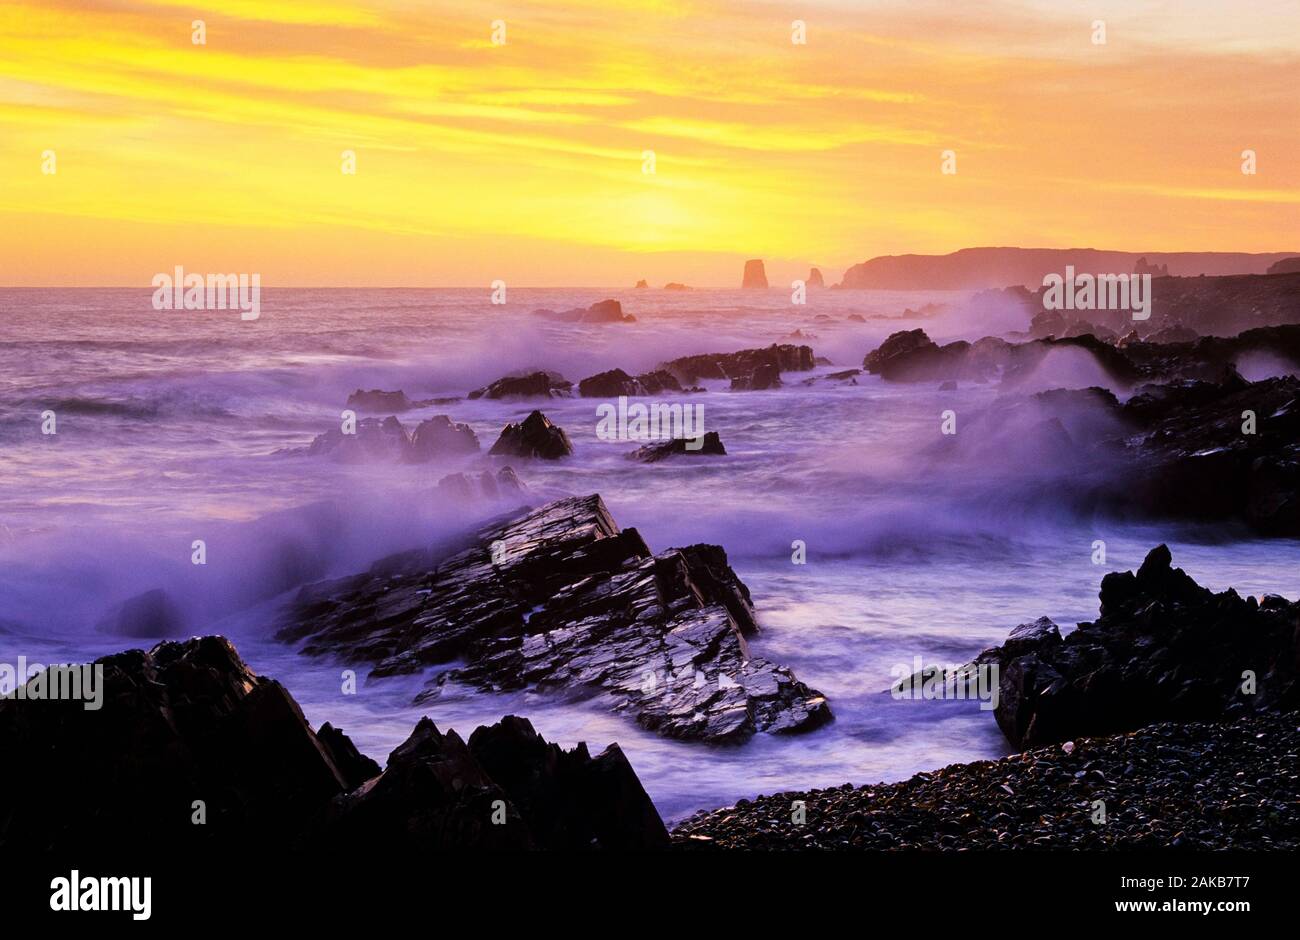 Landscape with waves crashing on rocky coastline at sunset, Newfoundland, Canada Stock Photo